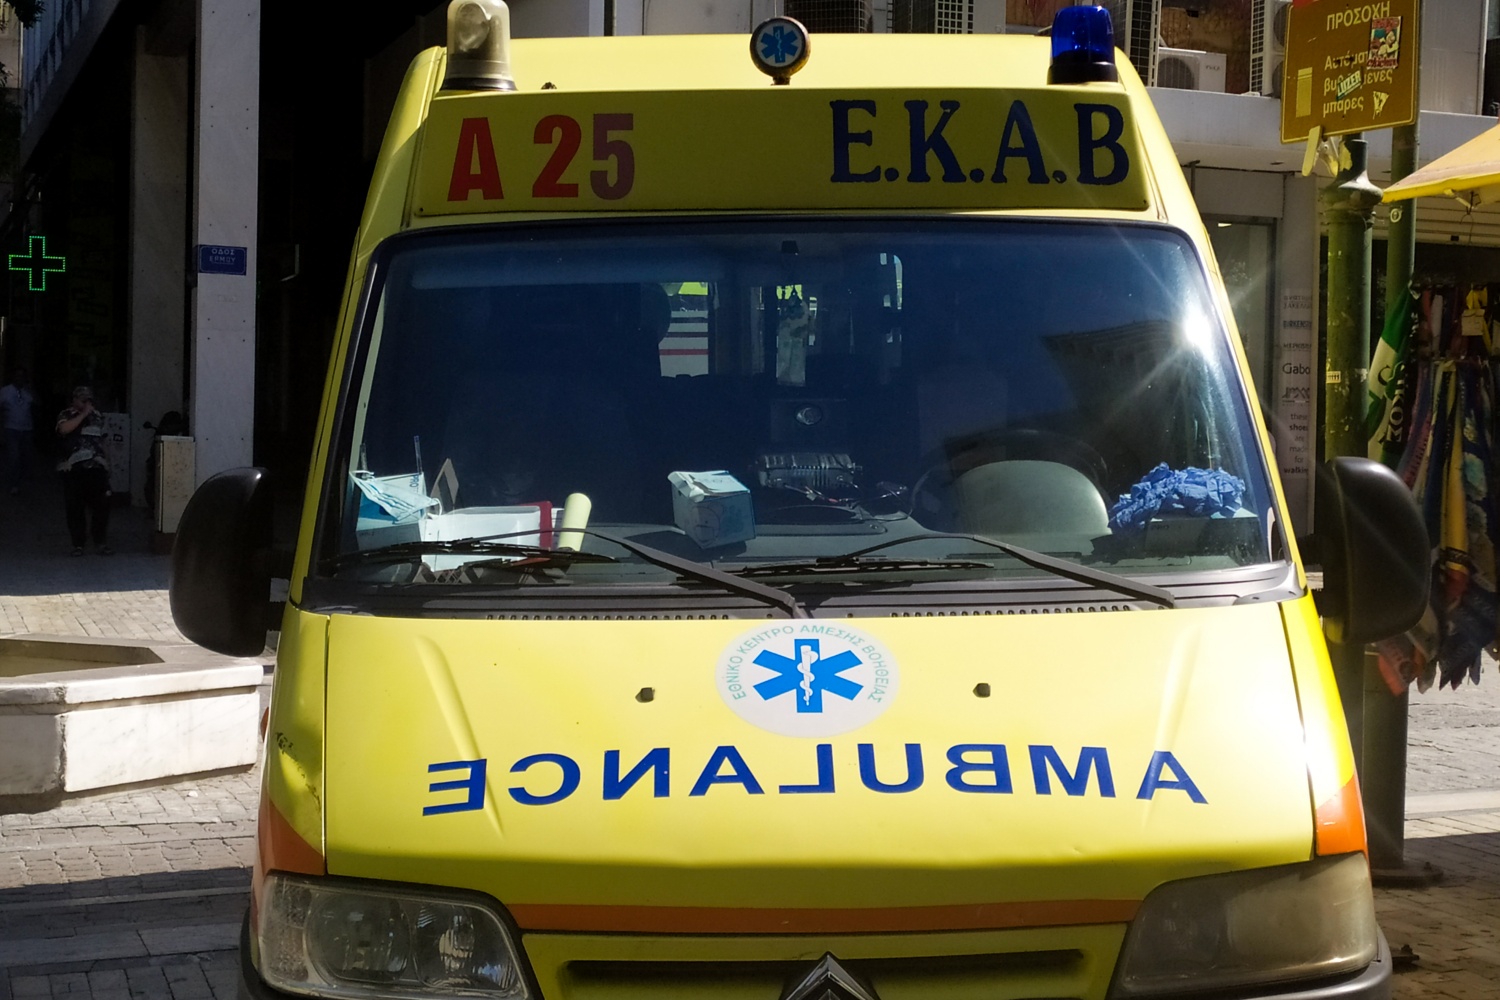 Ιωάννινα: Σε εξέλιξη επιχείρηση διάσωσης για τραυματία αναρριχητή στην Αστράκα